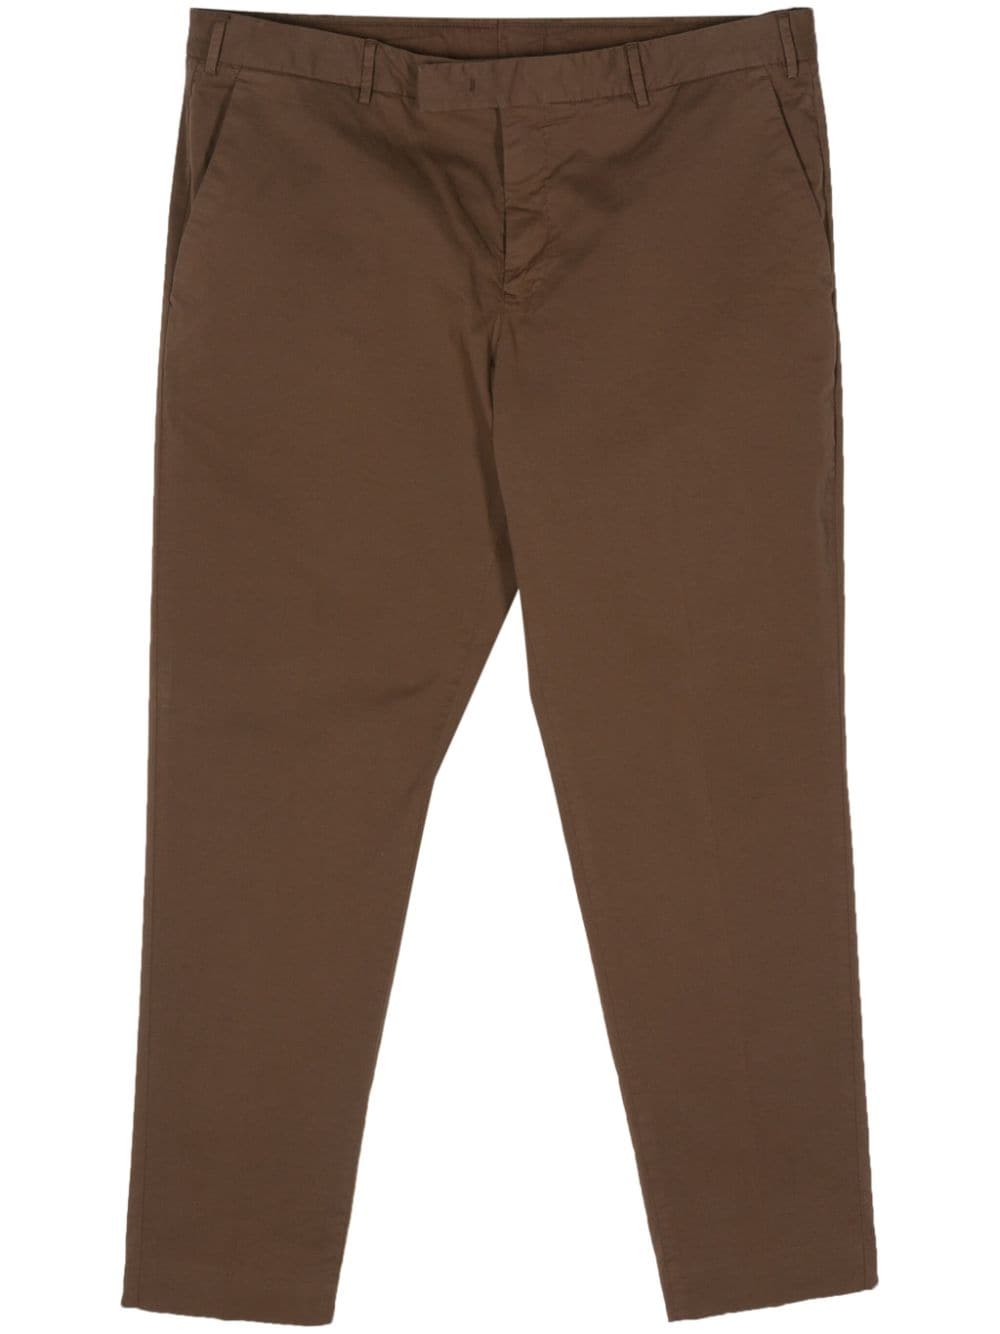 PT Torino tapered cotton chino trousers - Brown von PT Torino